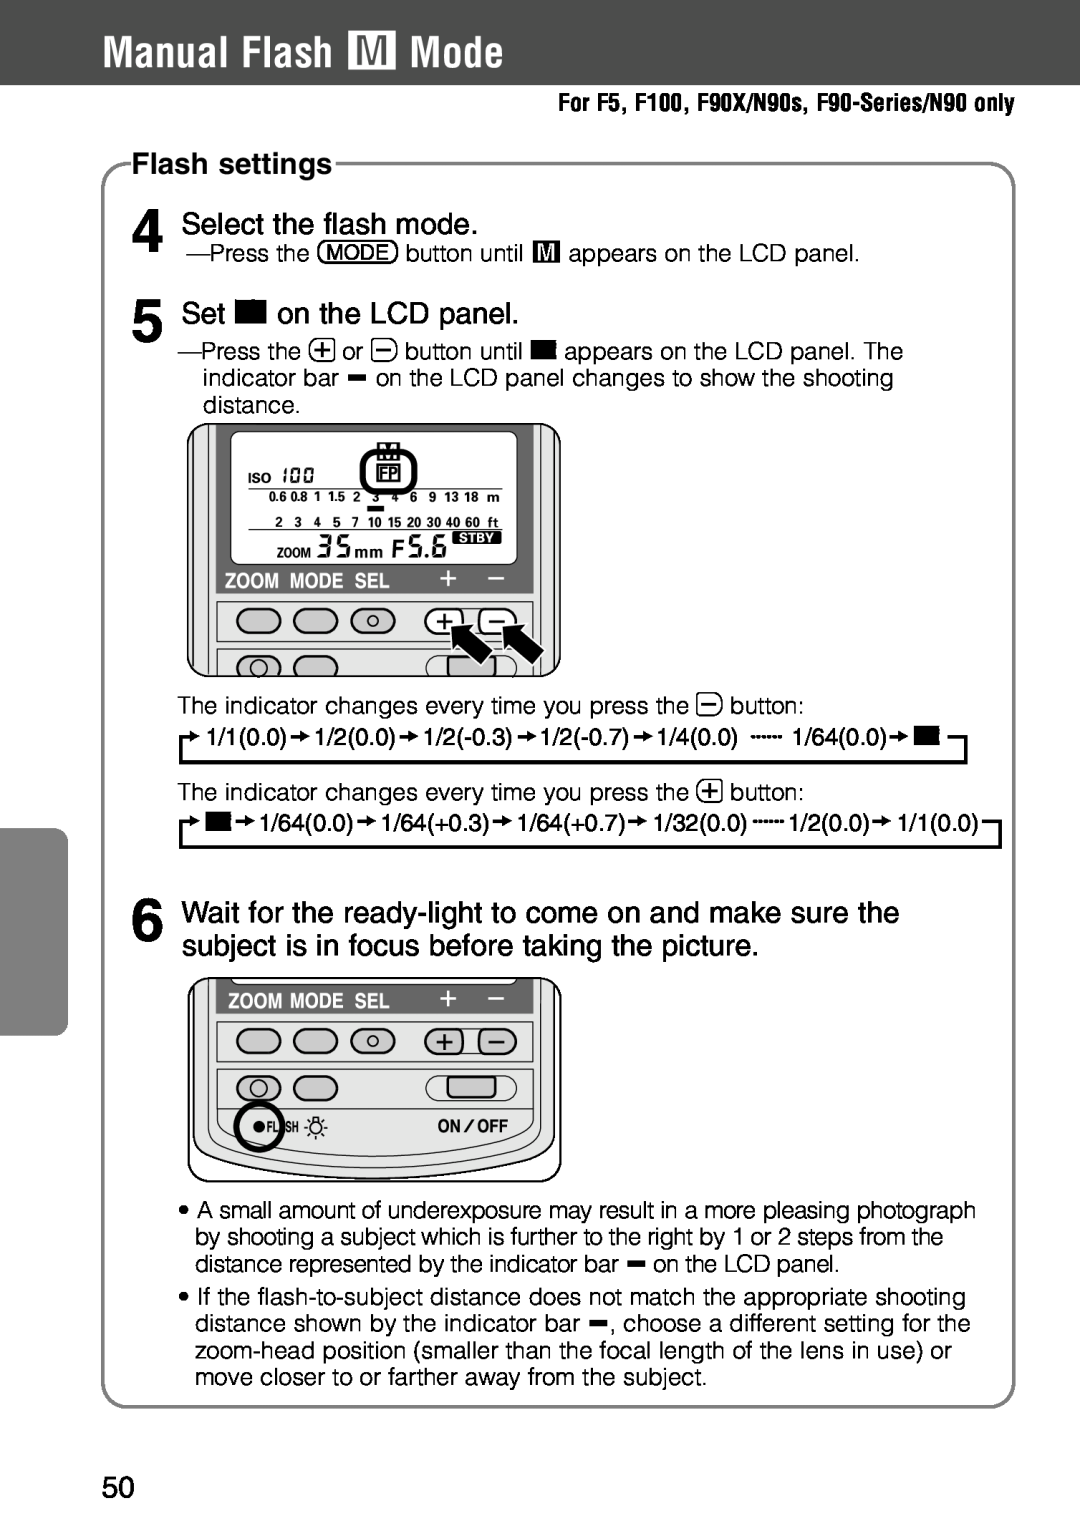 Nikon SB-28 instruction manual Manual Flash ƒ Mode, Flash settings, Select the flash mode, Set % on the LCD panel 